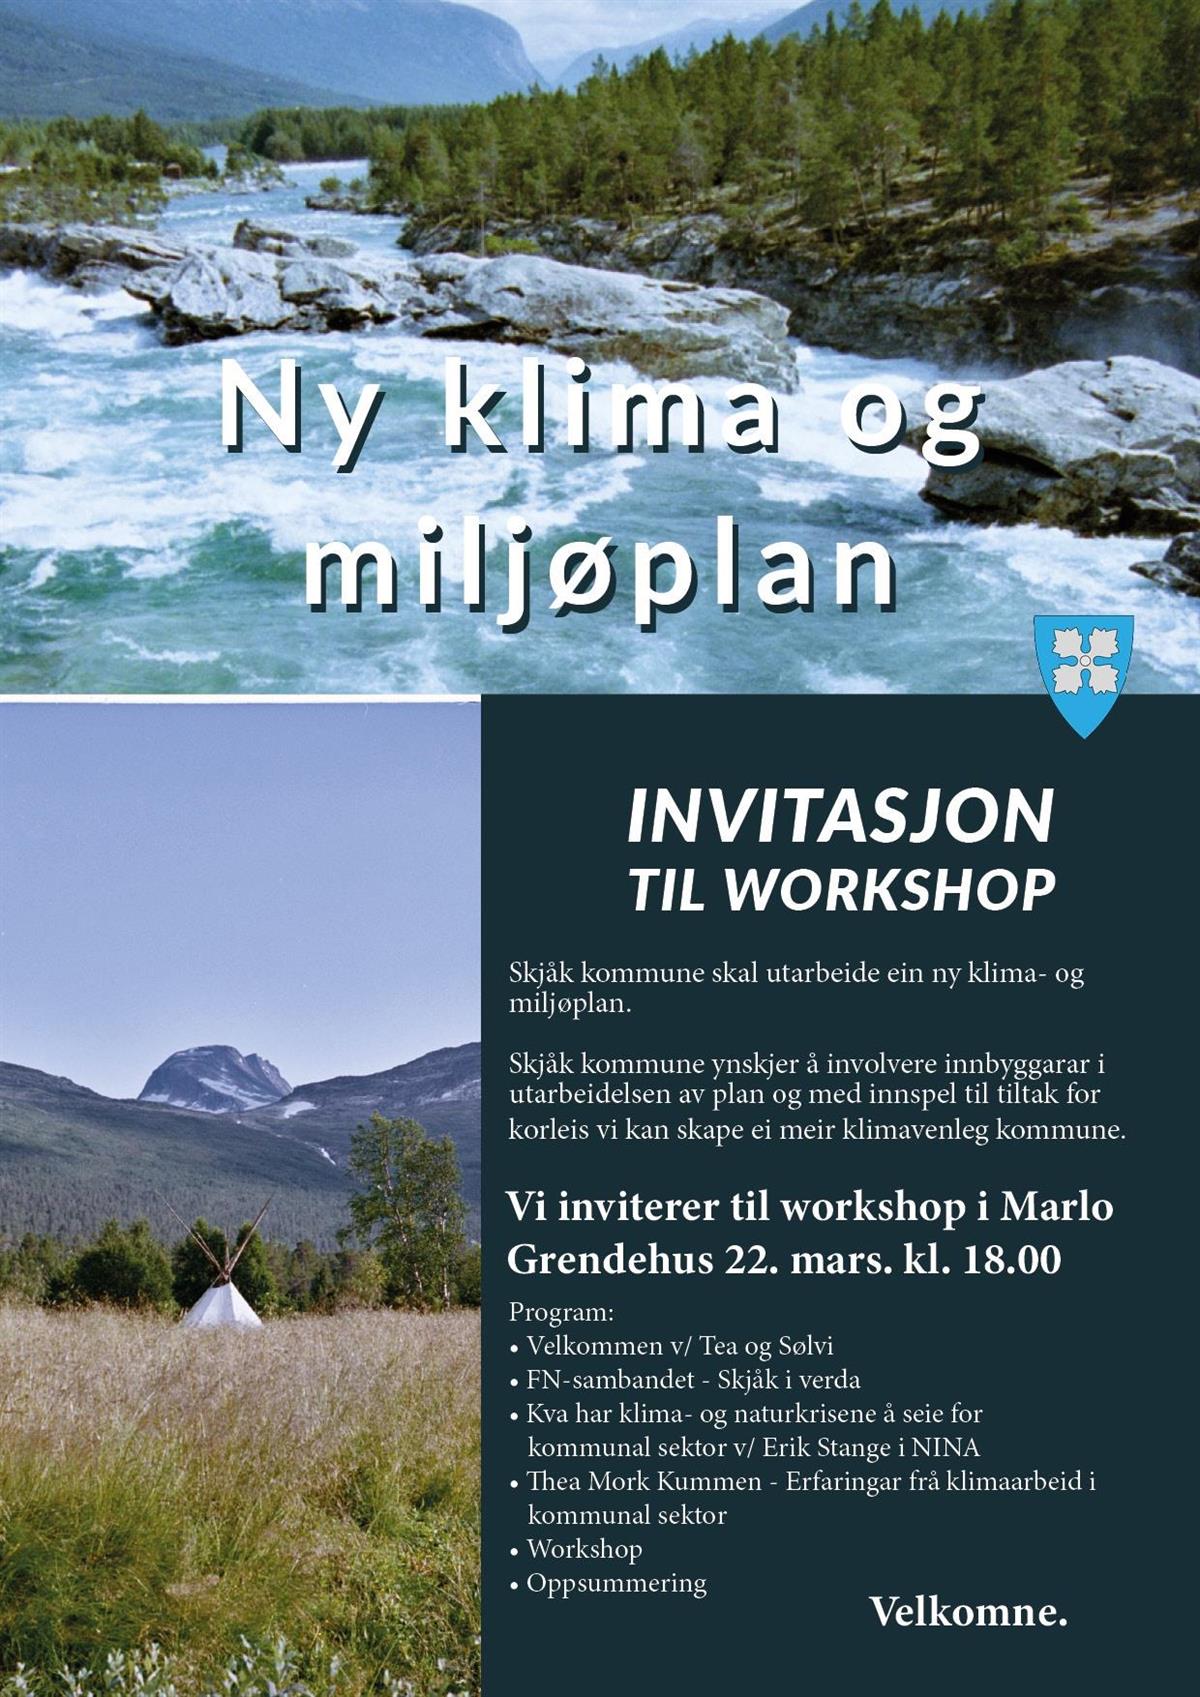 Plakat om invitasjon til workshop om ein ny klima-og miljøplan i Skjåk kommune - Klikk for stort bilde